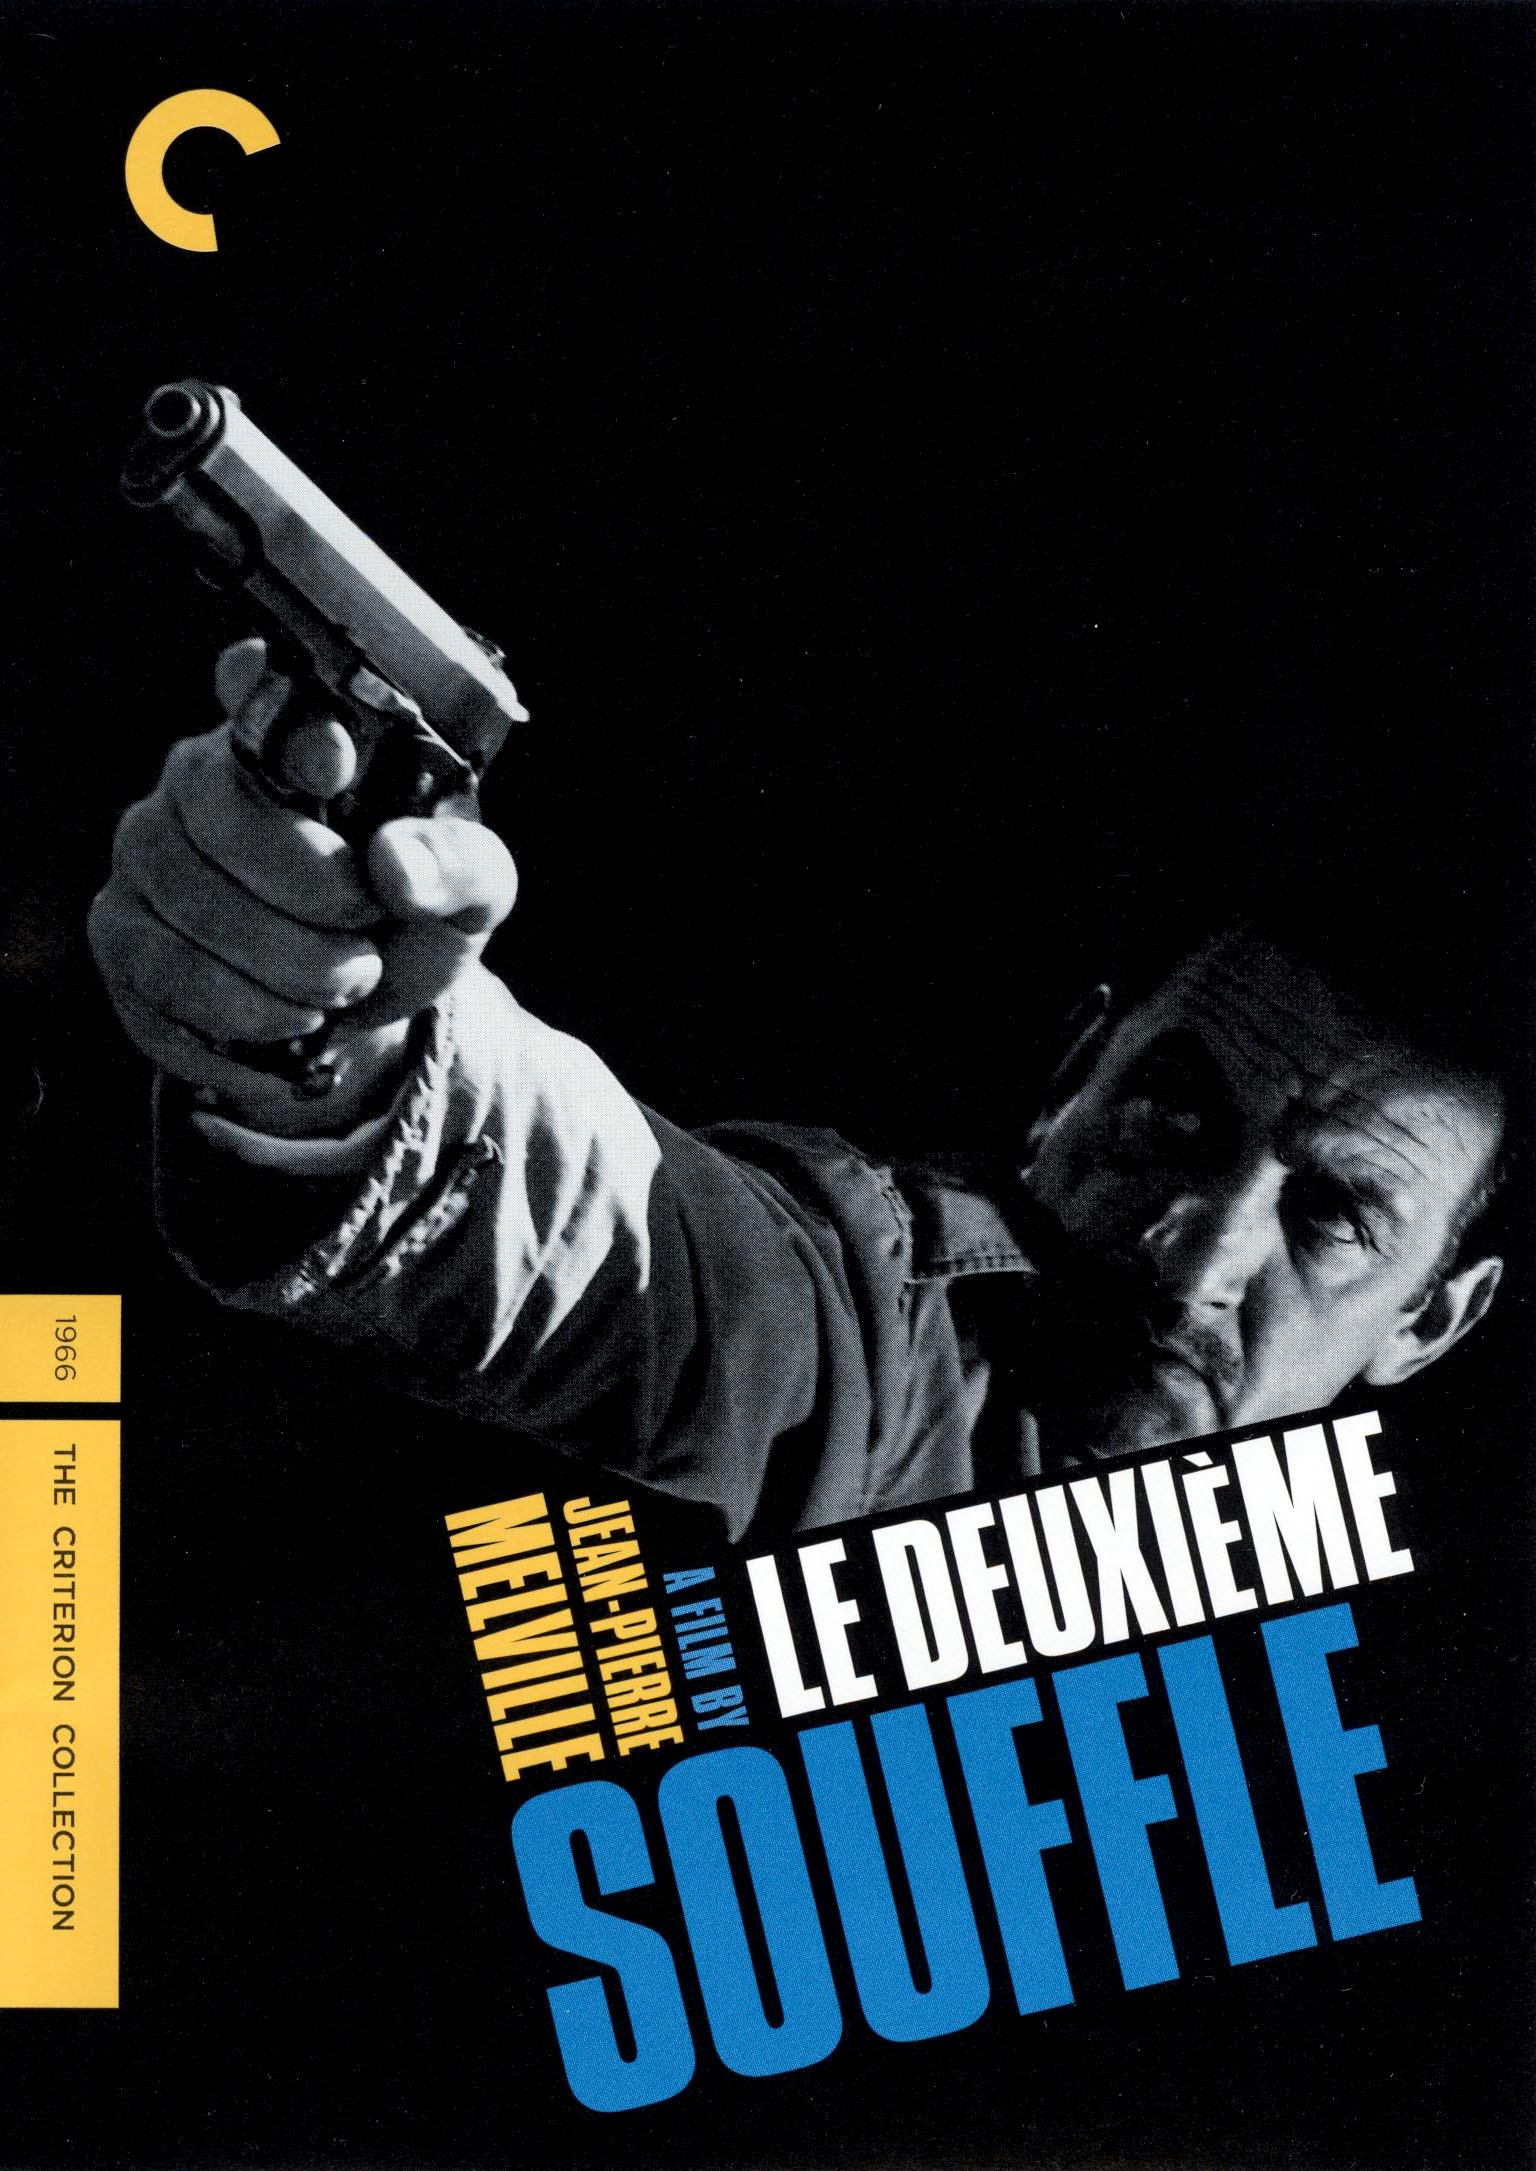 Best Buy: Le Deuxieme Souffle [Criterion Collection] [1966]